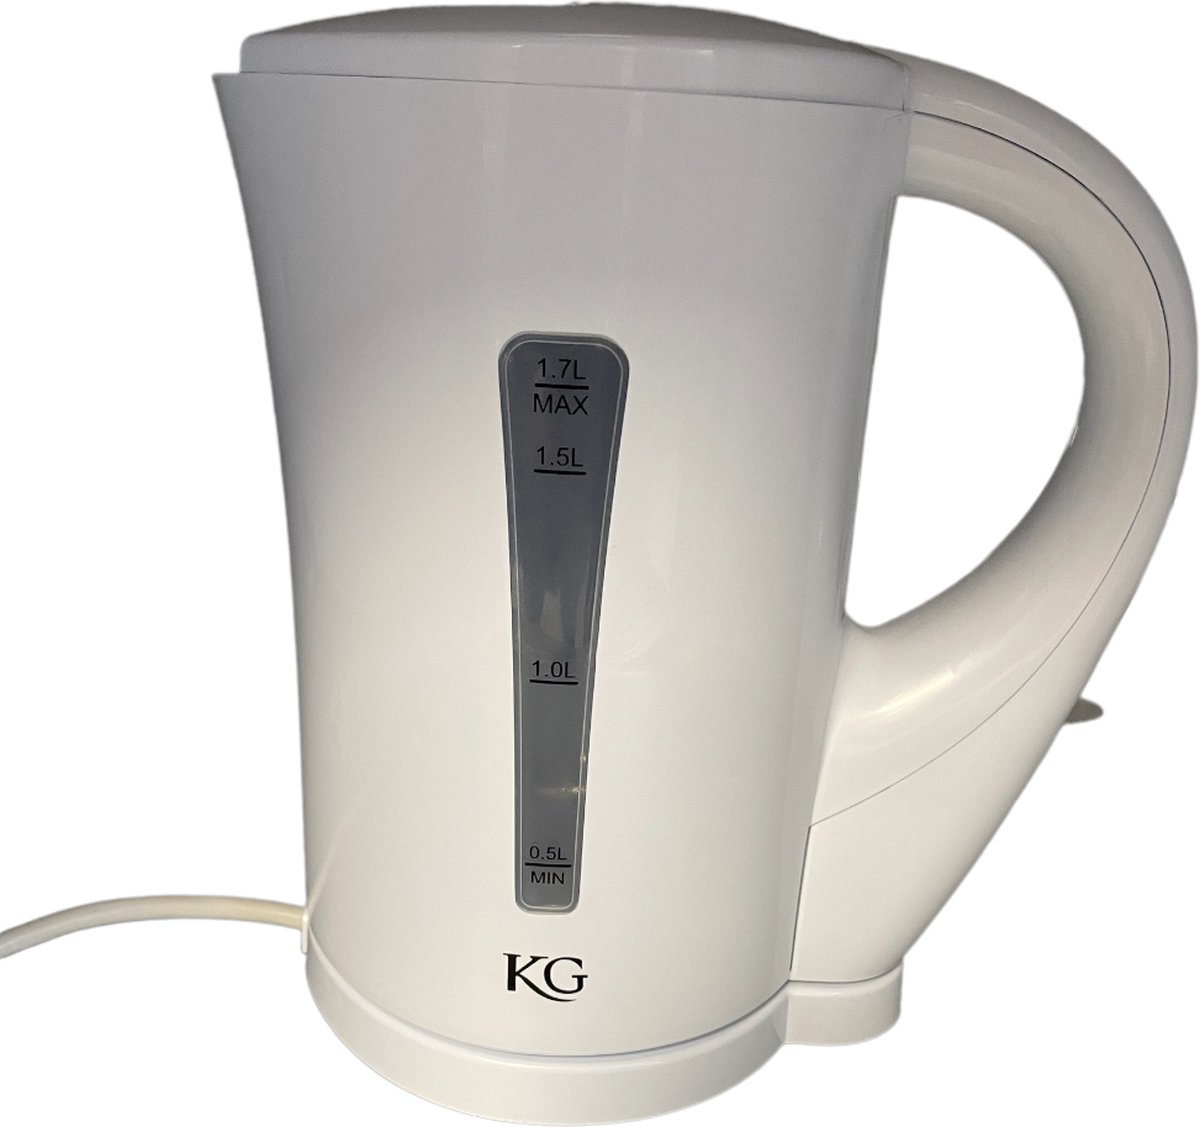 KG Waterkoker 1,7 Liter, met automatische Kookstop, incl. Droogkookbeveiliging & Indicatielampje, 2200 Watt, KGD1001, Kleur: Wit